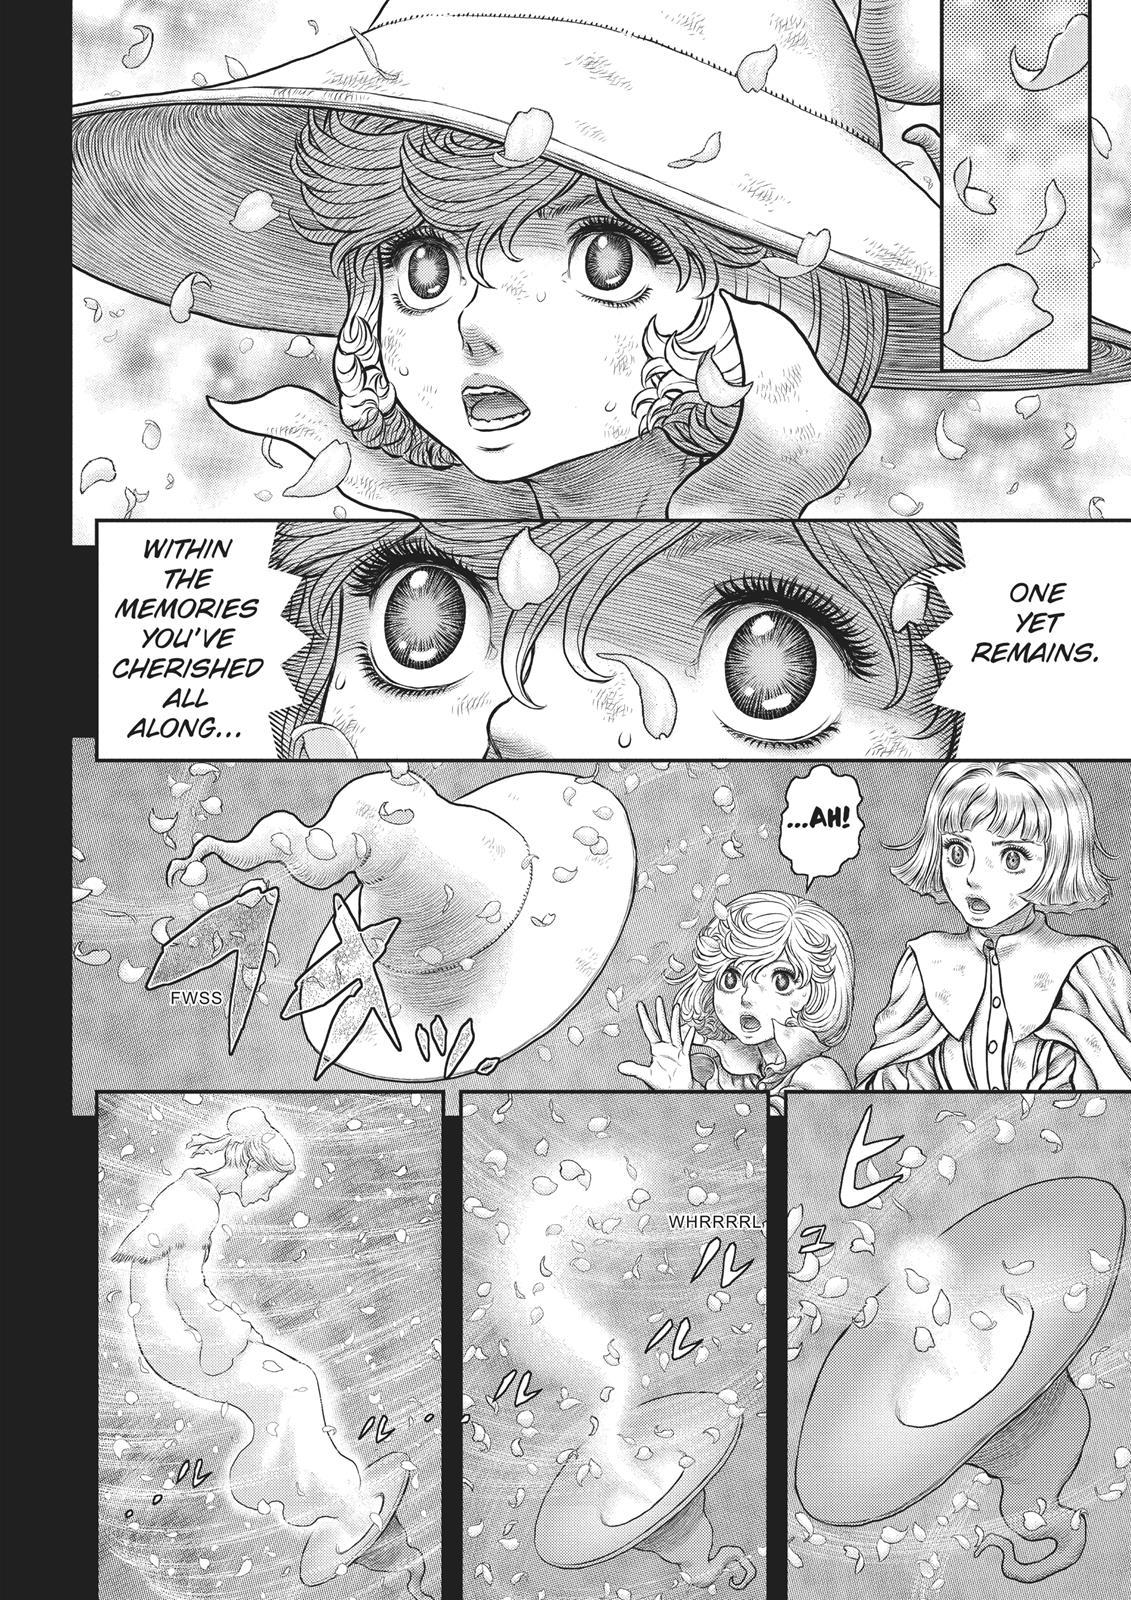 Berserk Manga Chapter 353 image 11